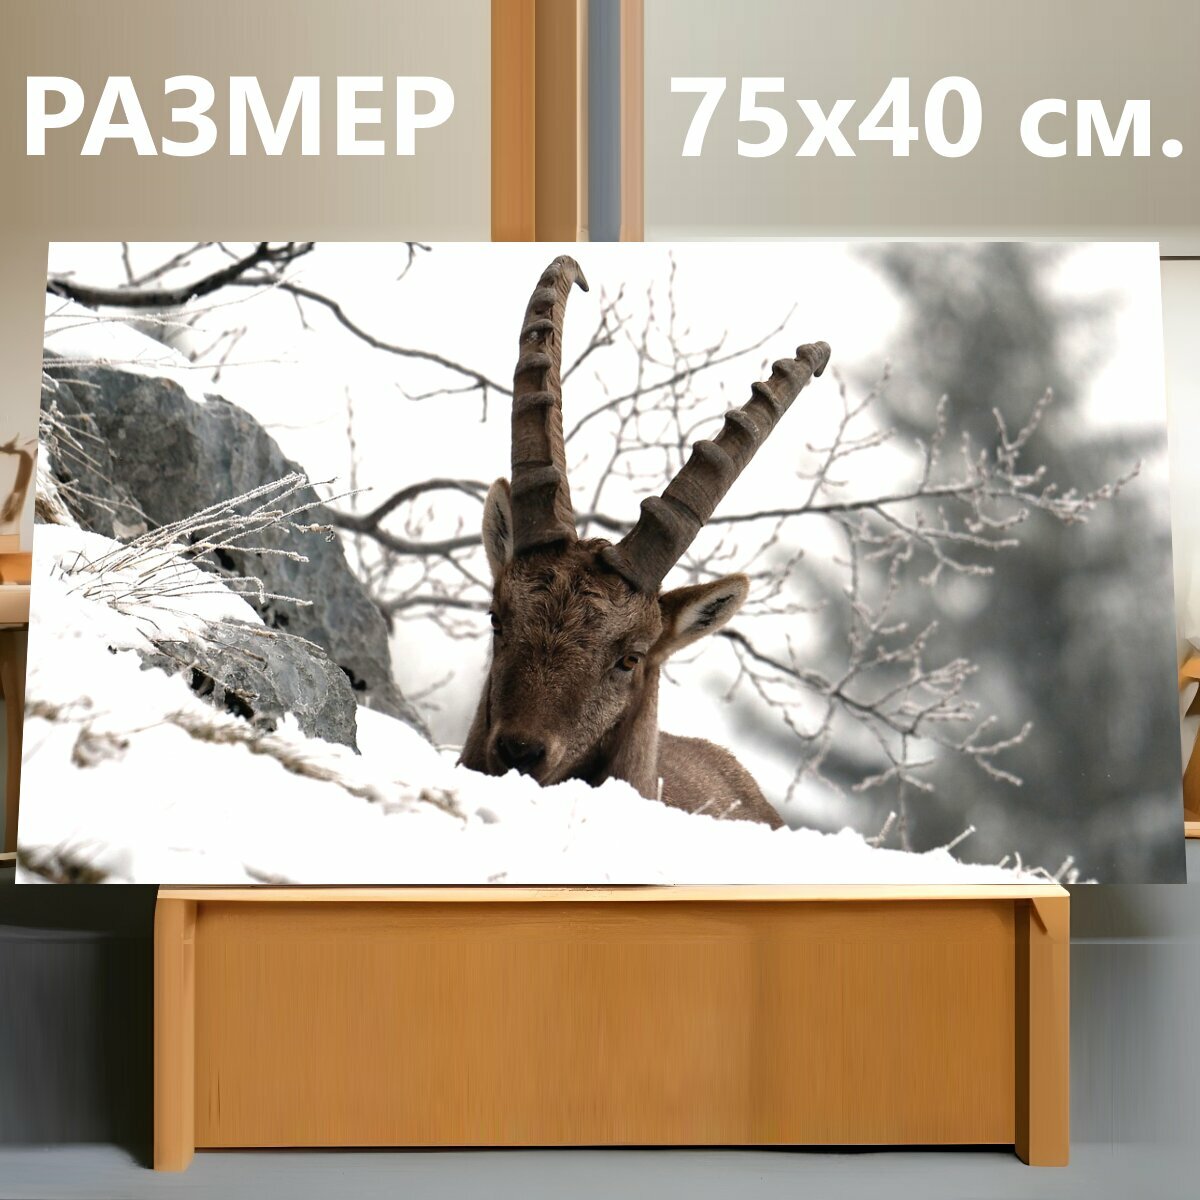 Картина на холсте "Горный козел, гора, снег" на подрамнике 75х40 см. для интерьера